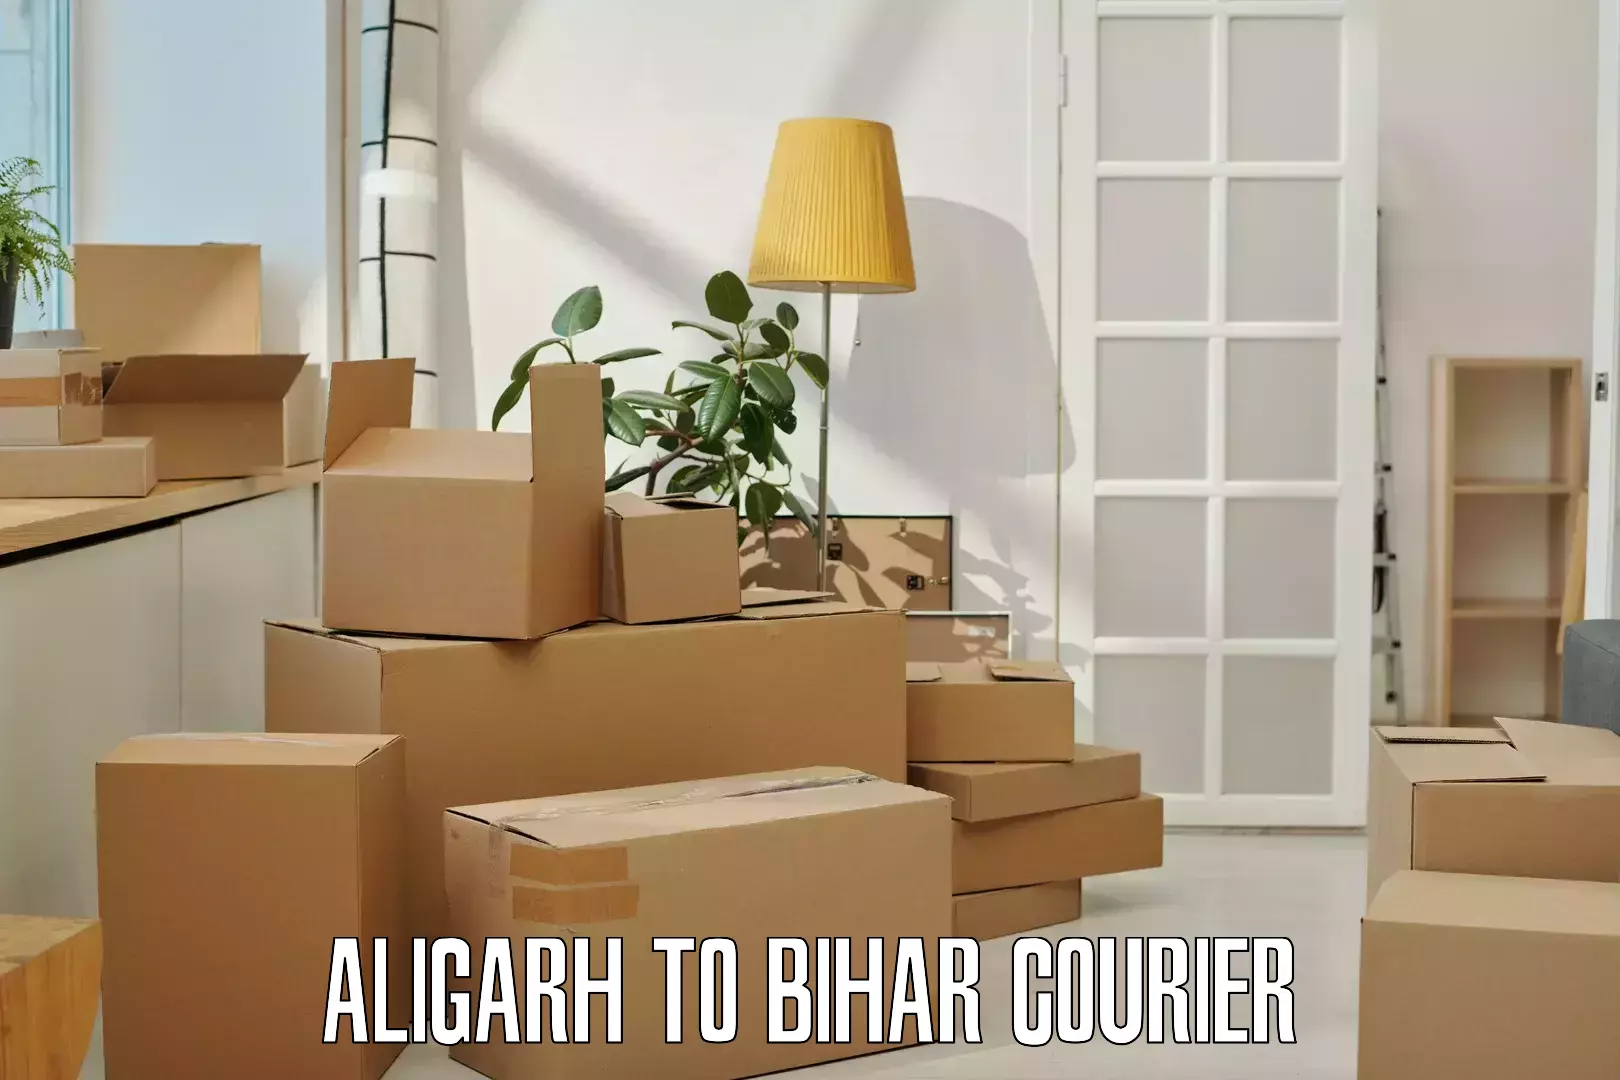 High-speed parcel service Aligarh to Dehri